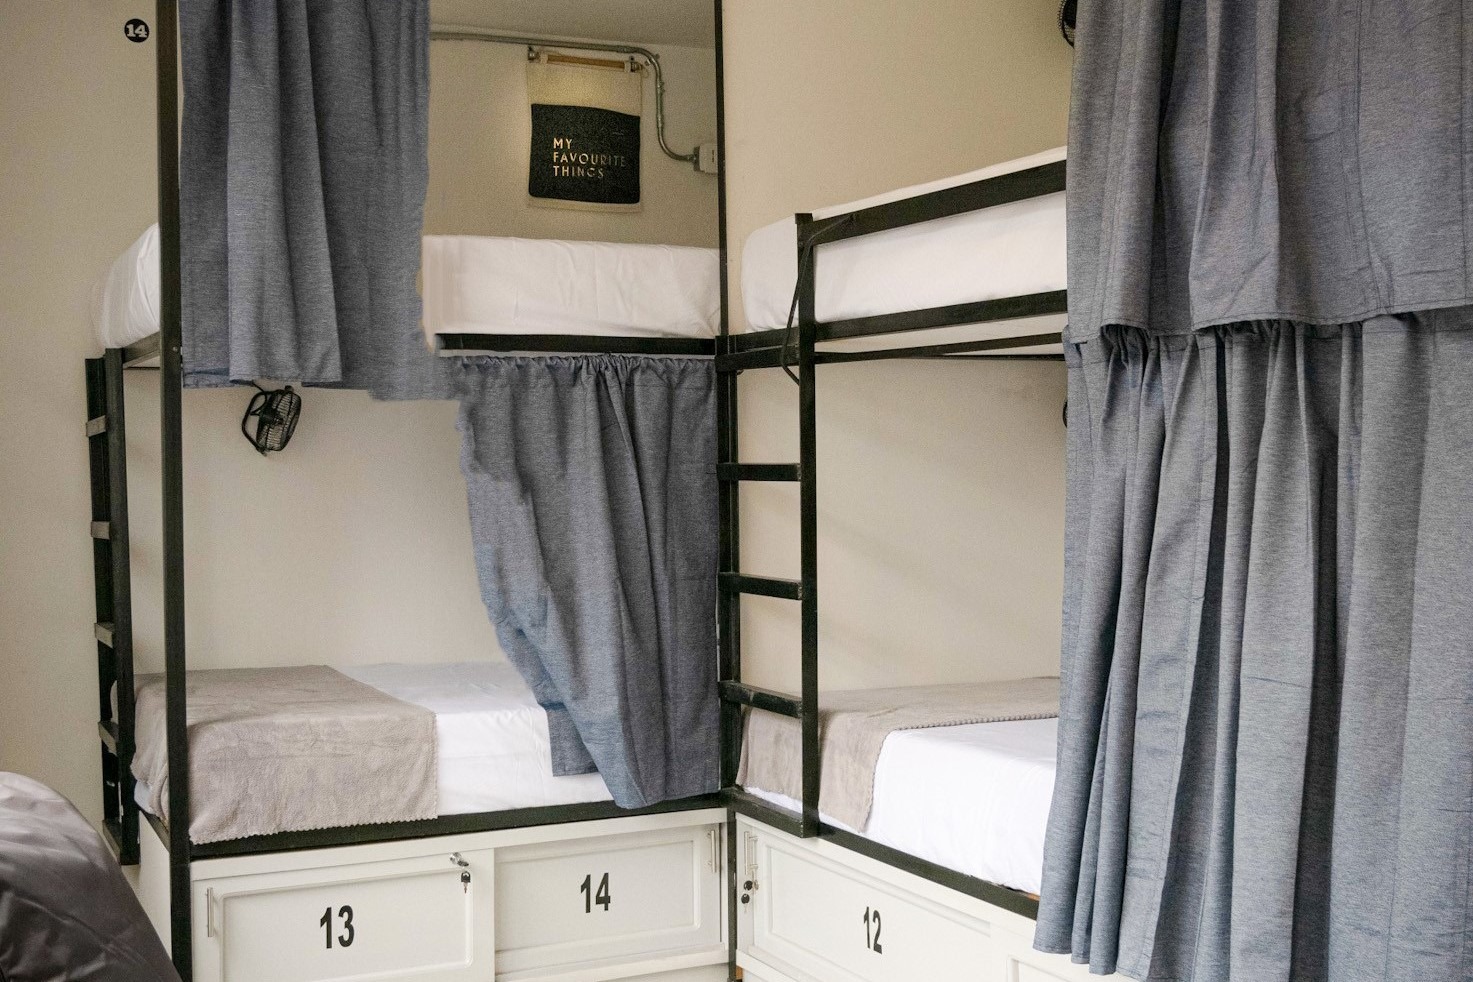 6 camas en dormitorios mixtos con baño privado del Hostal Pereira